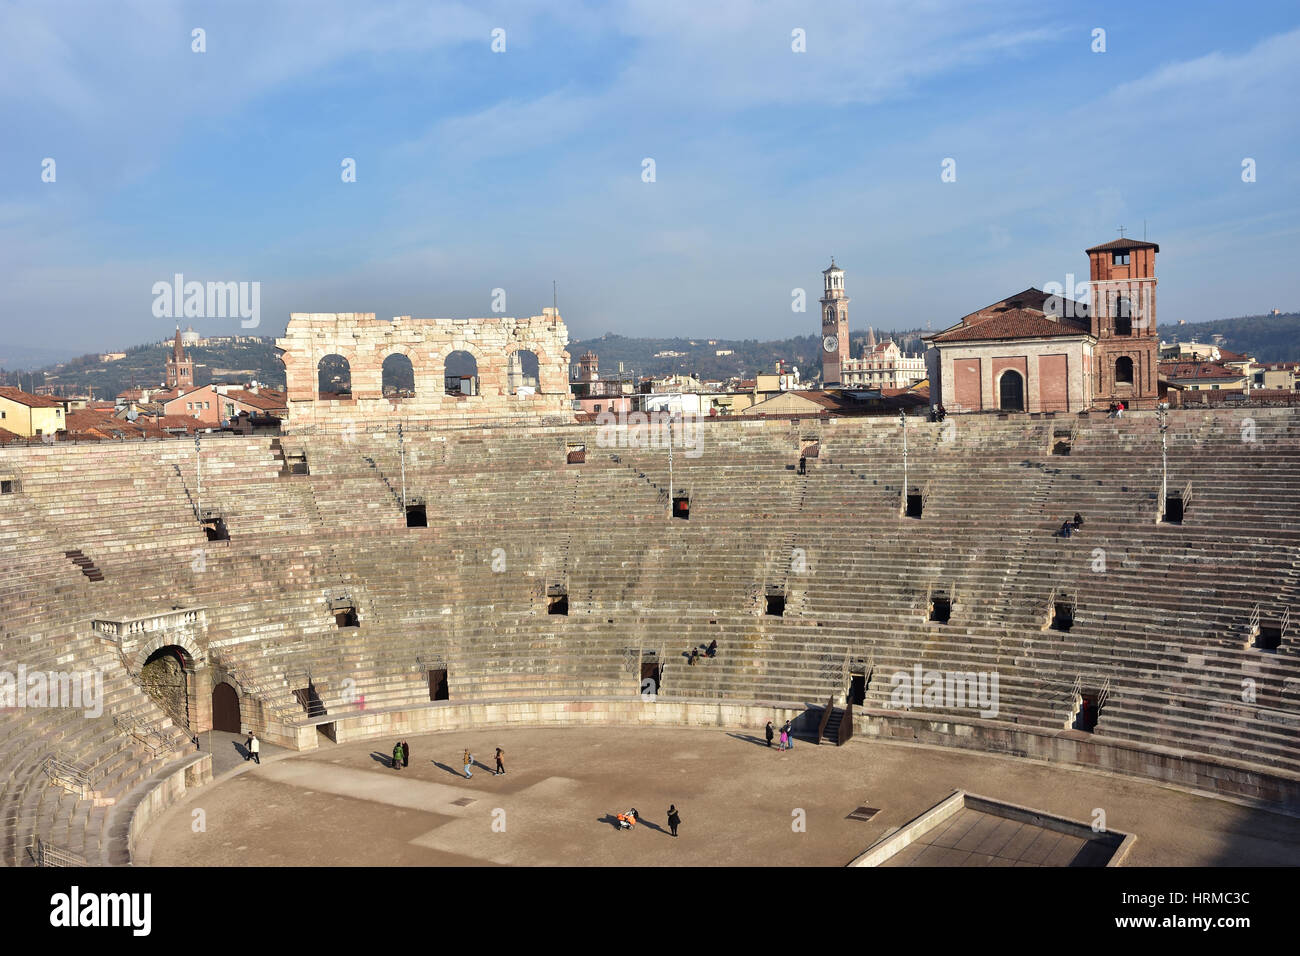 Vista panoramica della famosa Arena di Verona, un antico anfiteatro romano ancora in uso, con lo skyline della città Foto Stock